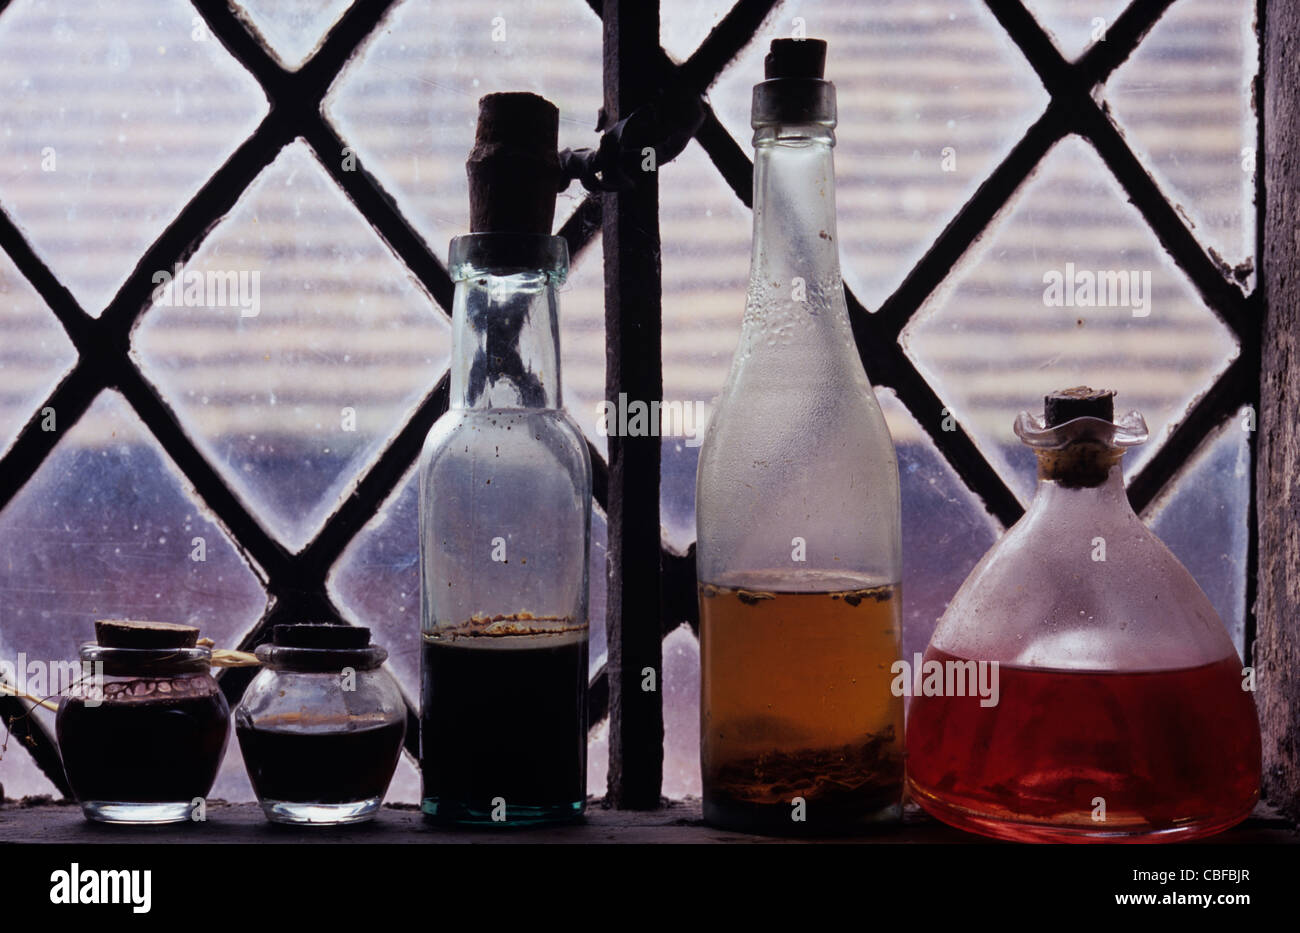 Collection de meubles anciens pots et bouteilles contenant des liquides colorés et debout sur rebord de fenêtre au plomb de diamants Banque D'Images